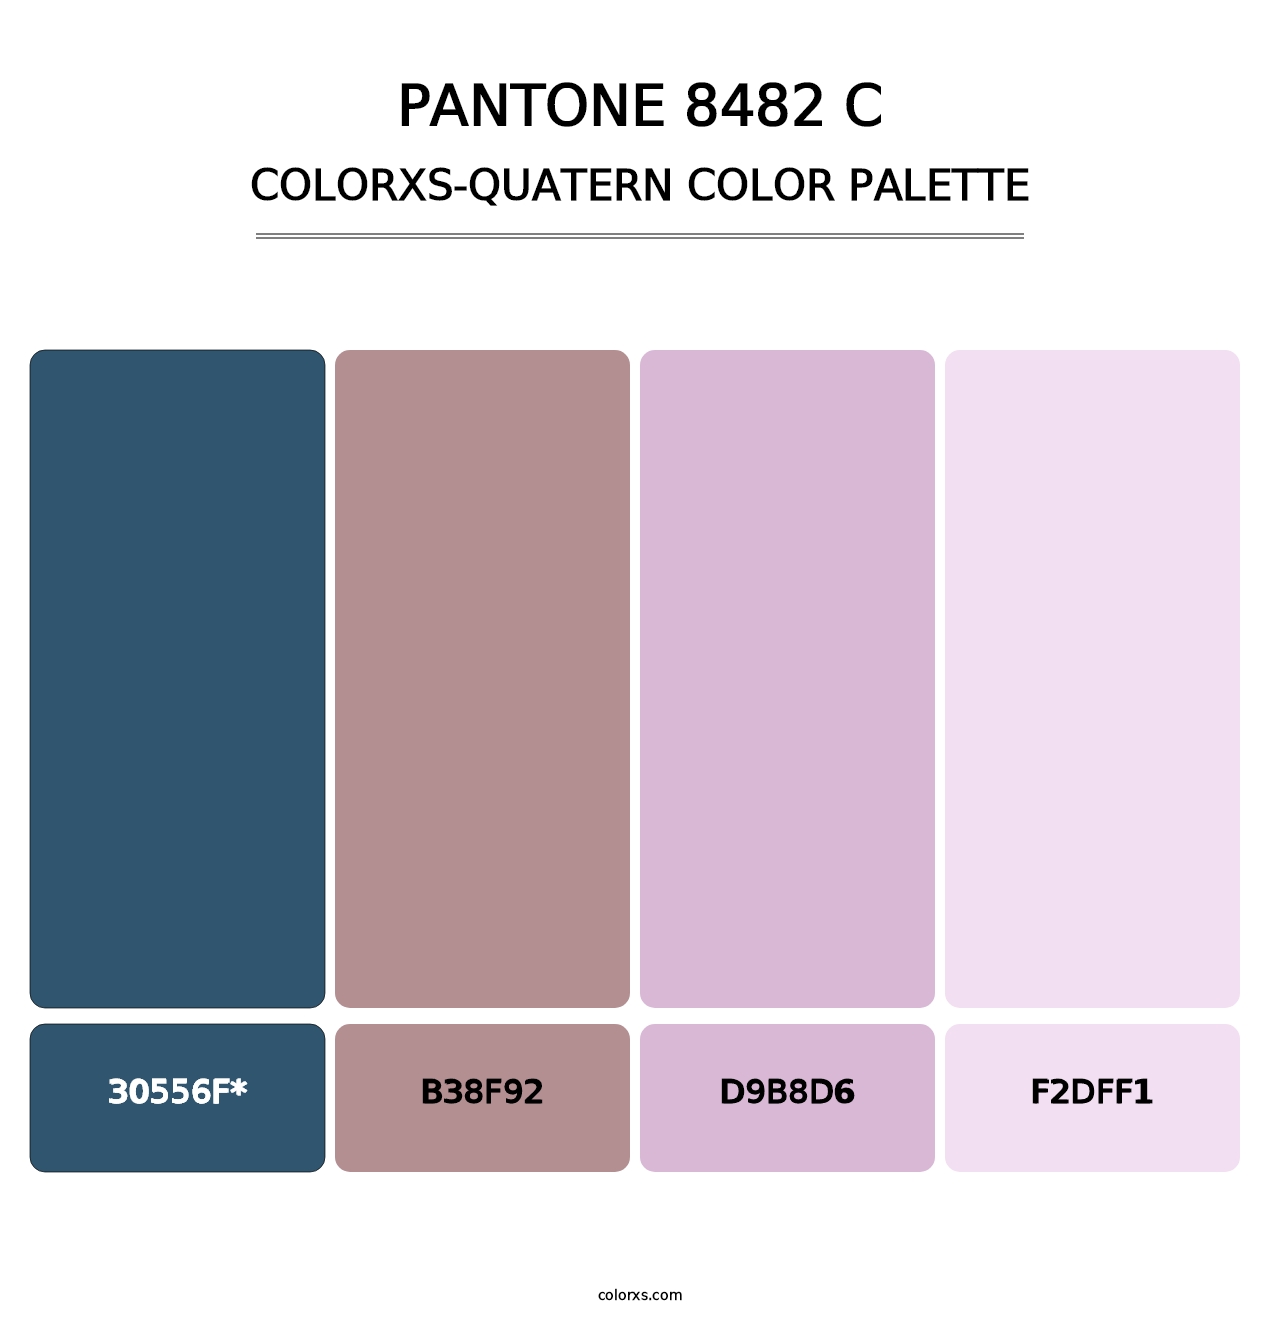 PANTONE 8482 C - Colorxs Quatern Palette